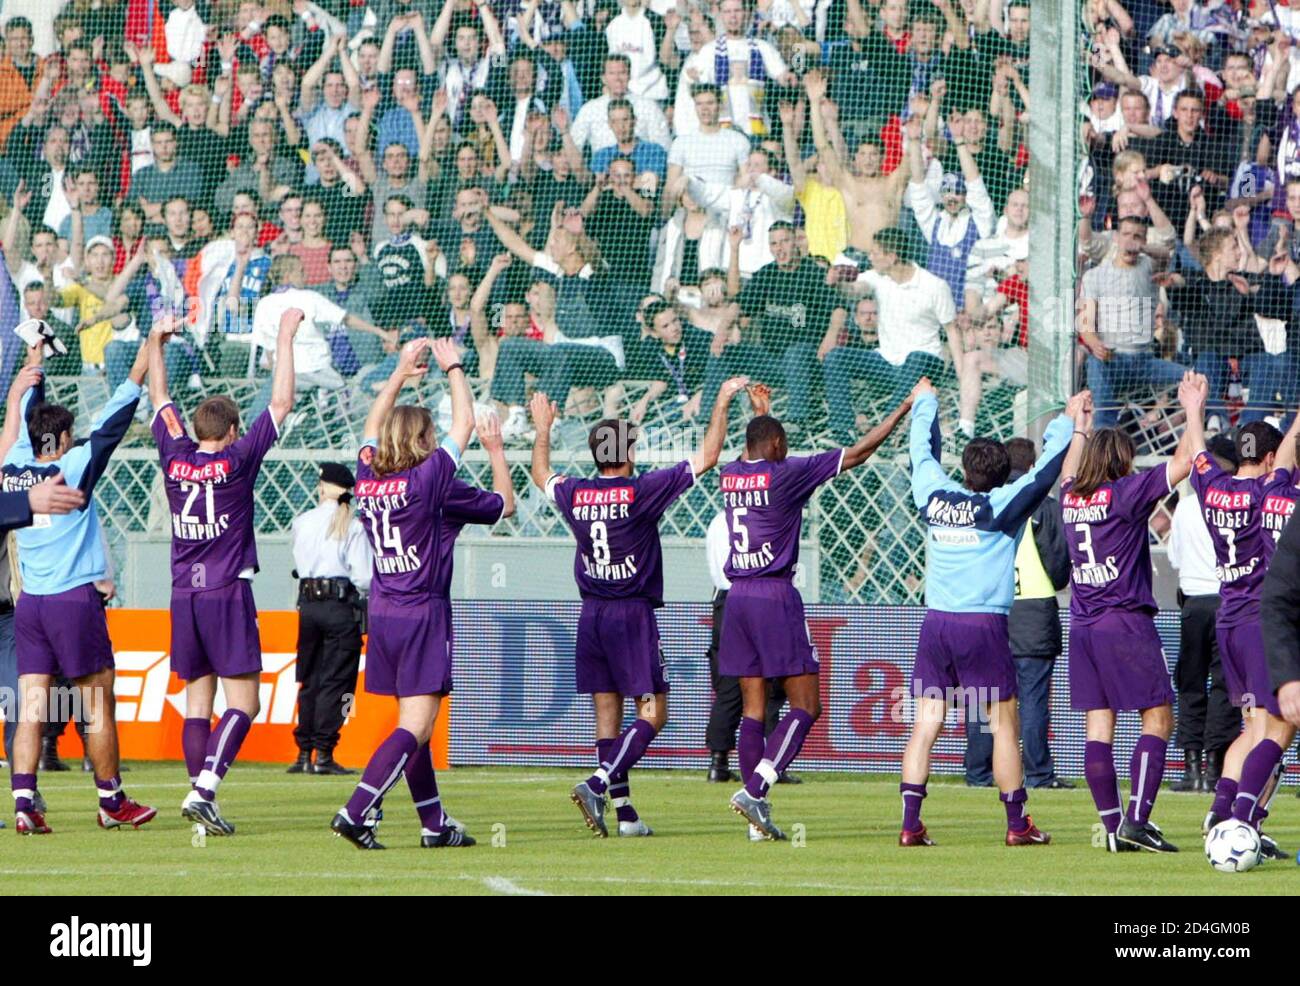 Das Fussball-Bundesligaspiel Rapid gegen Austria endete heute am 2.Mai 2004 in Wien 1:2. Im Bild jubeln die Austriaspieler nach dem Sieg. REUTERS/Robert Zolles REUTERS  PR/ Stock Photo